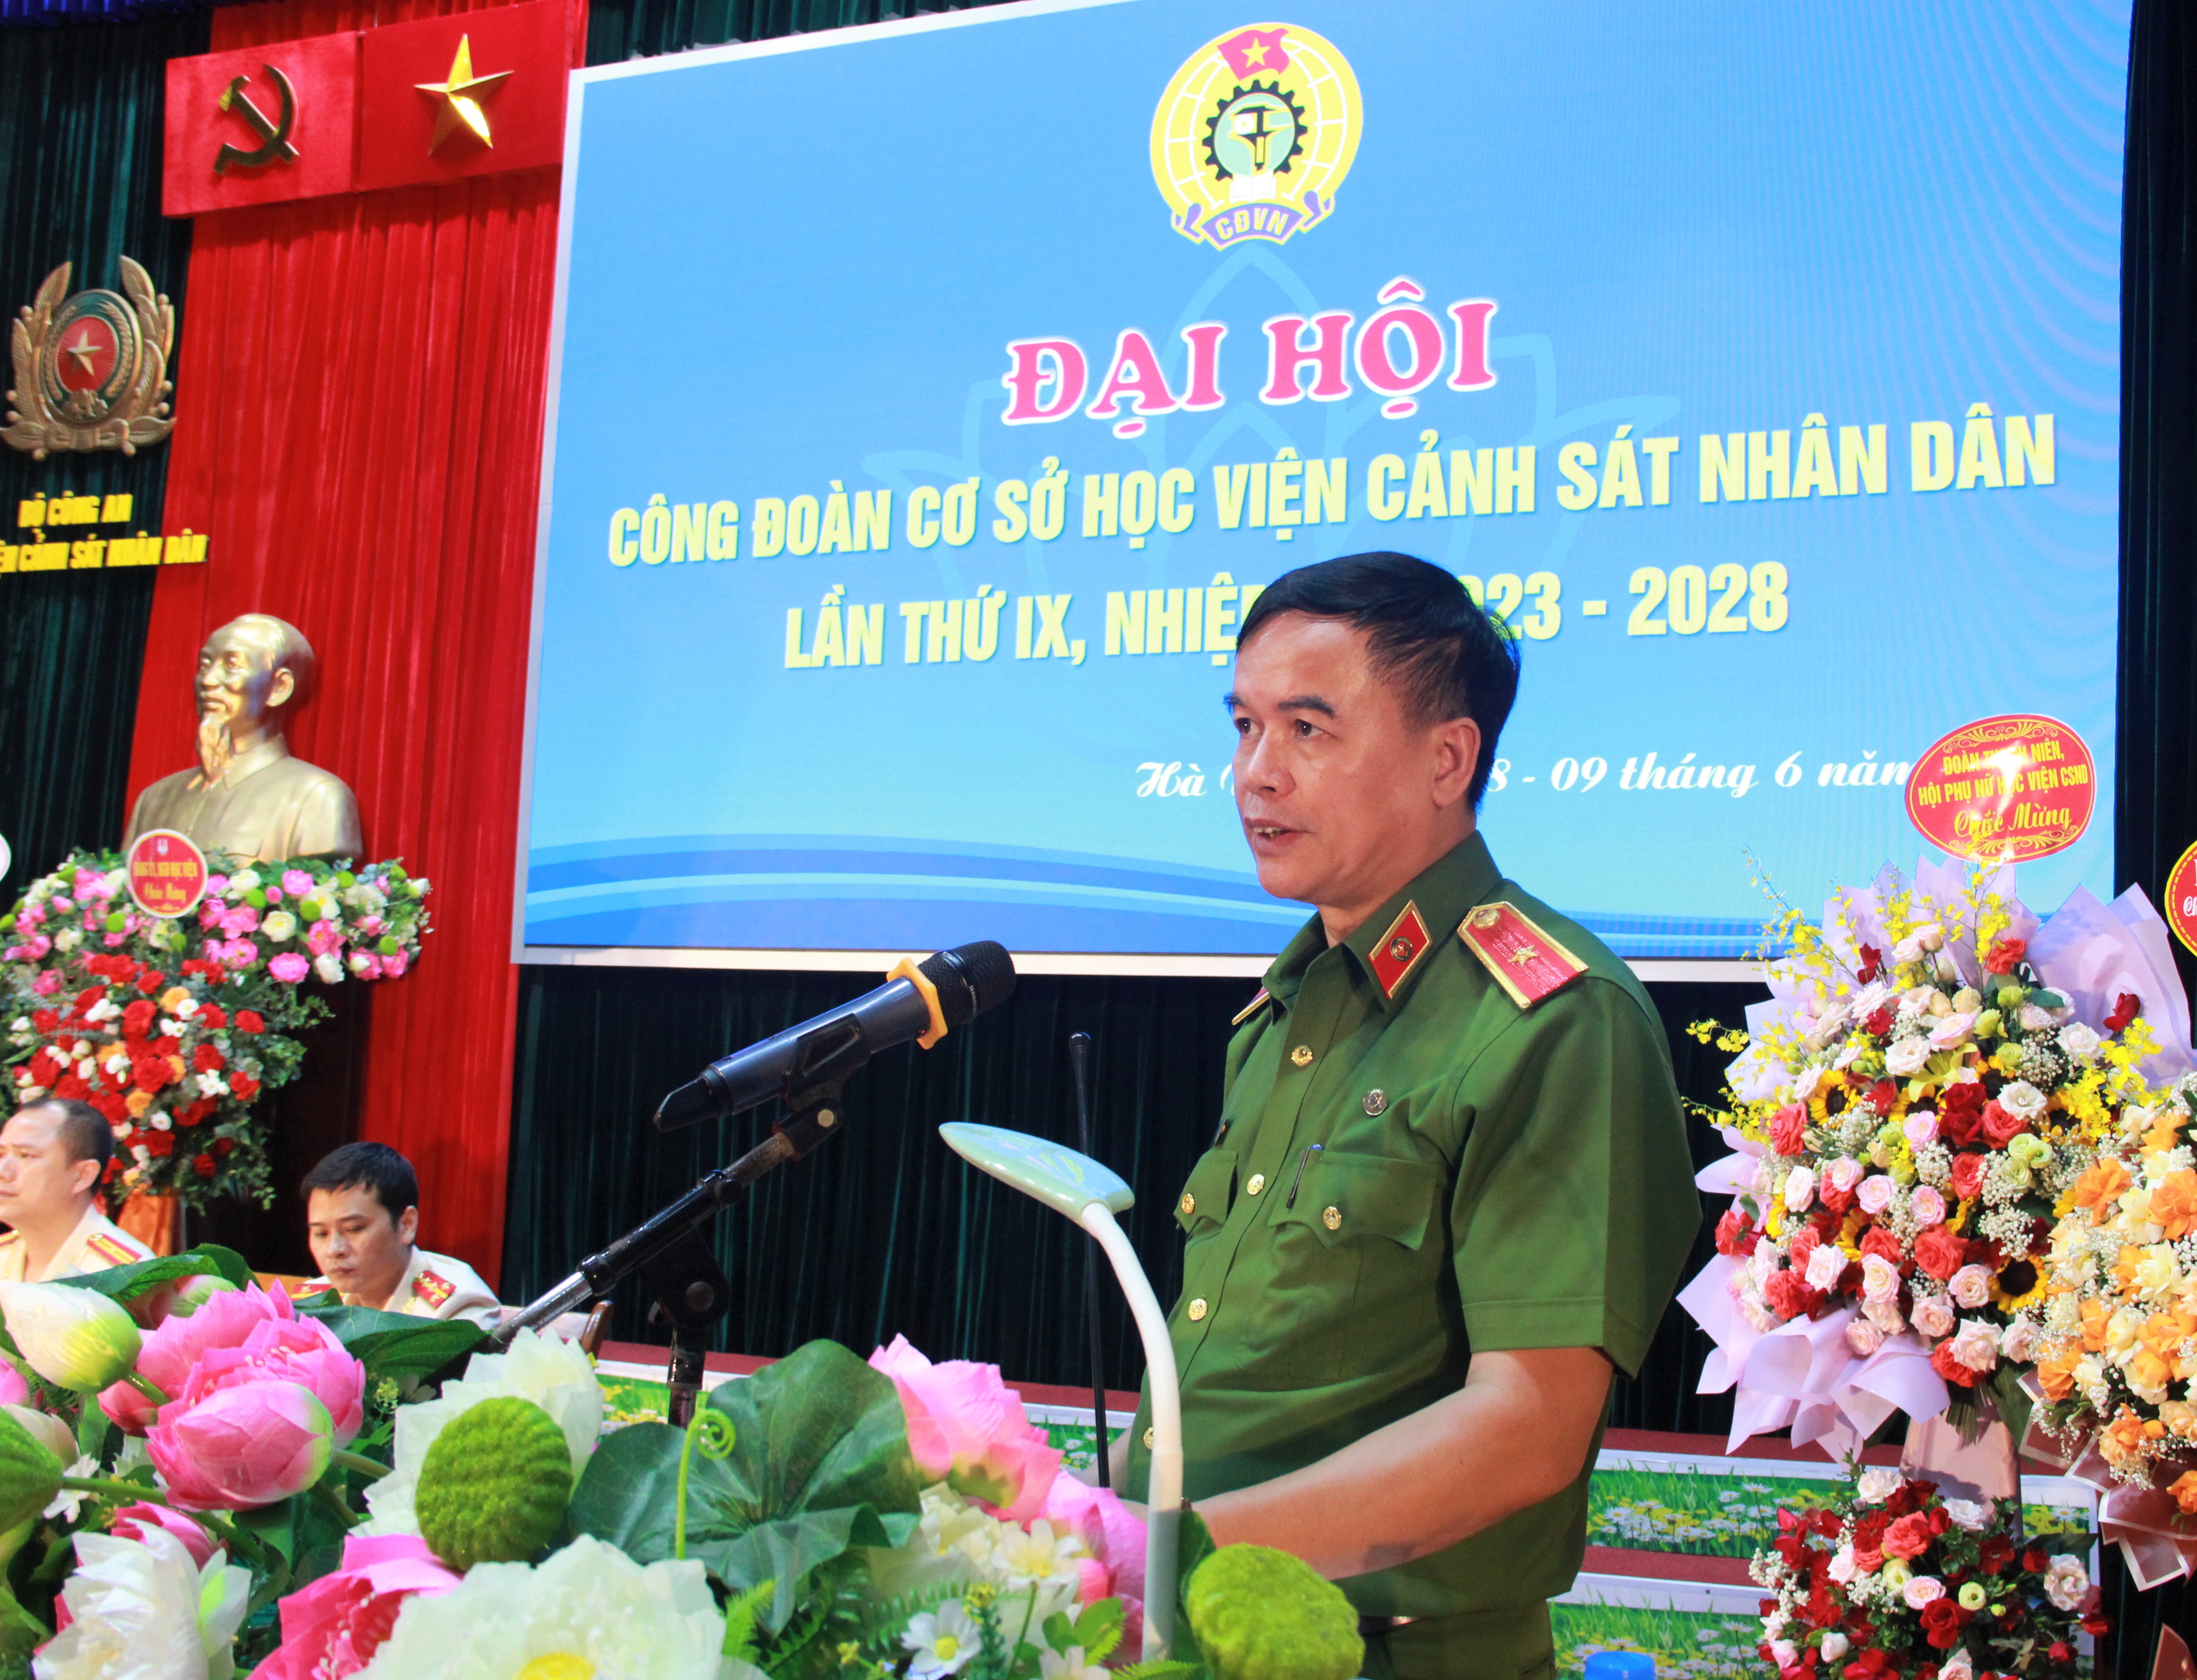 Thiếu tướng Nguyễn Đắc Hoan, Phó Giám đốc Học viện phát biểu chỉ đạo tại Đại hội